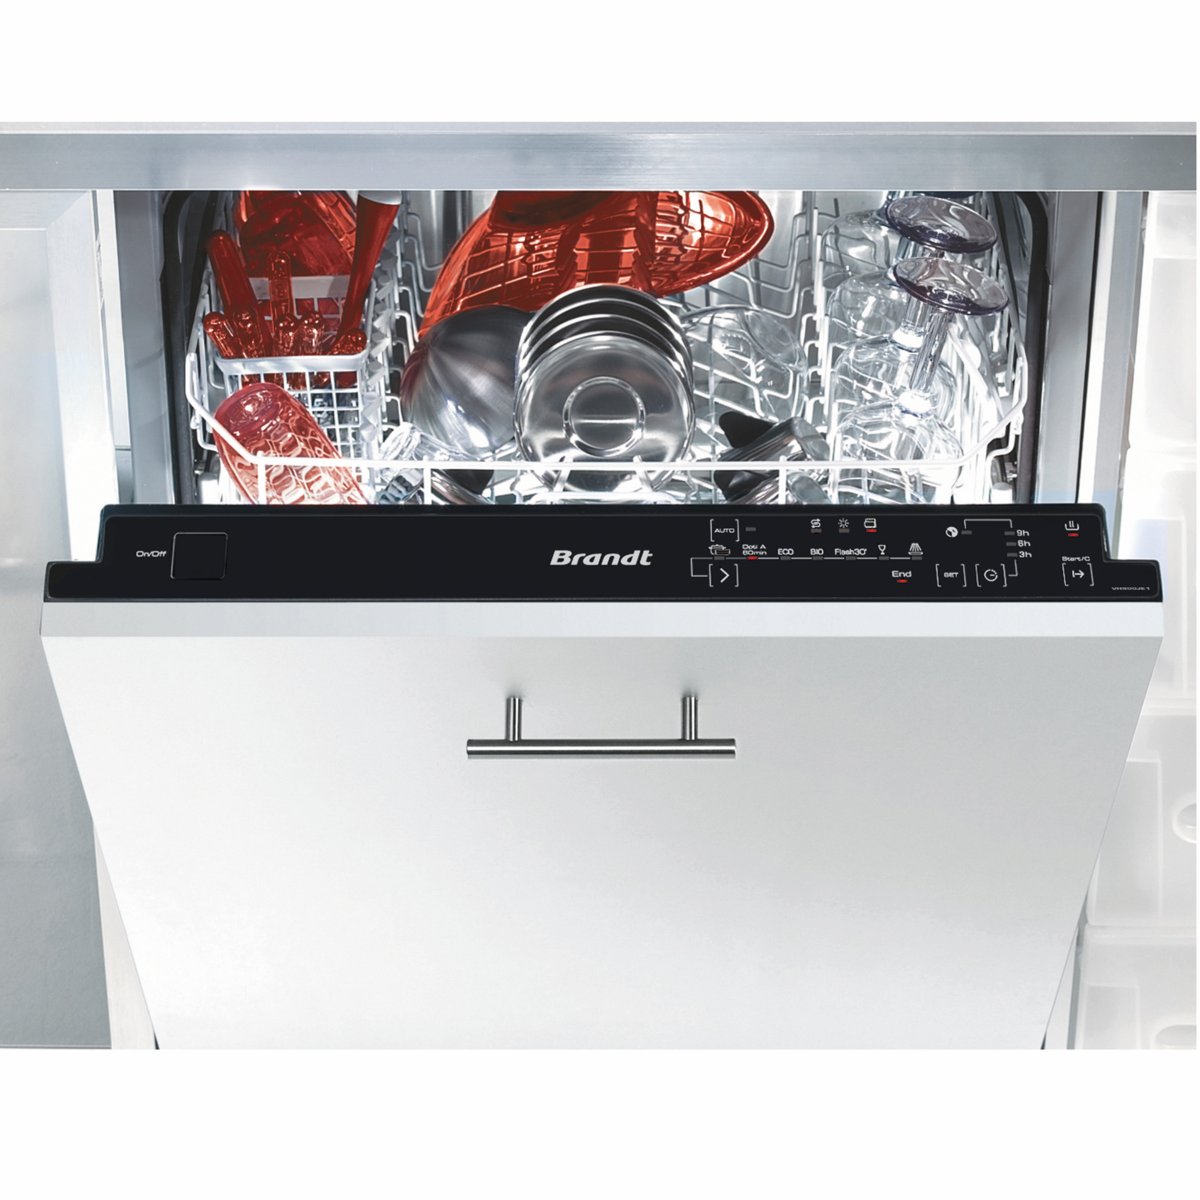 Lave Vaisselle La Redoute - Lave-vaisselle intégrable VH900JE1 Brandt Prix 369,99 Euros